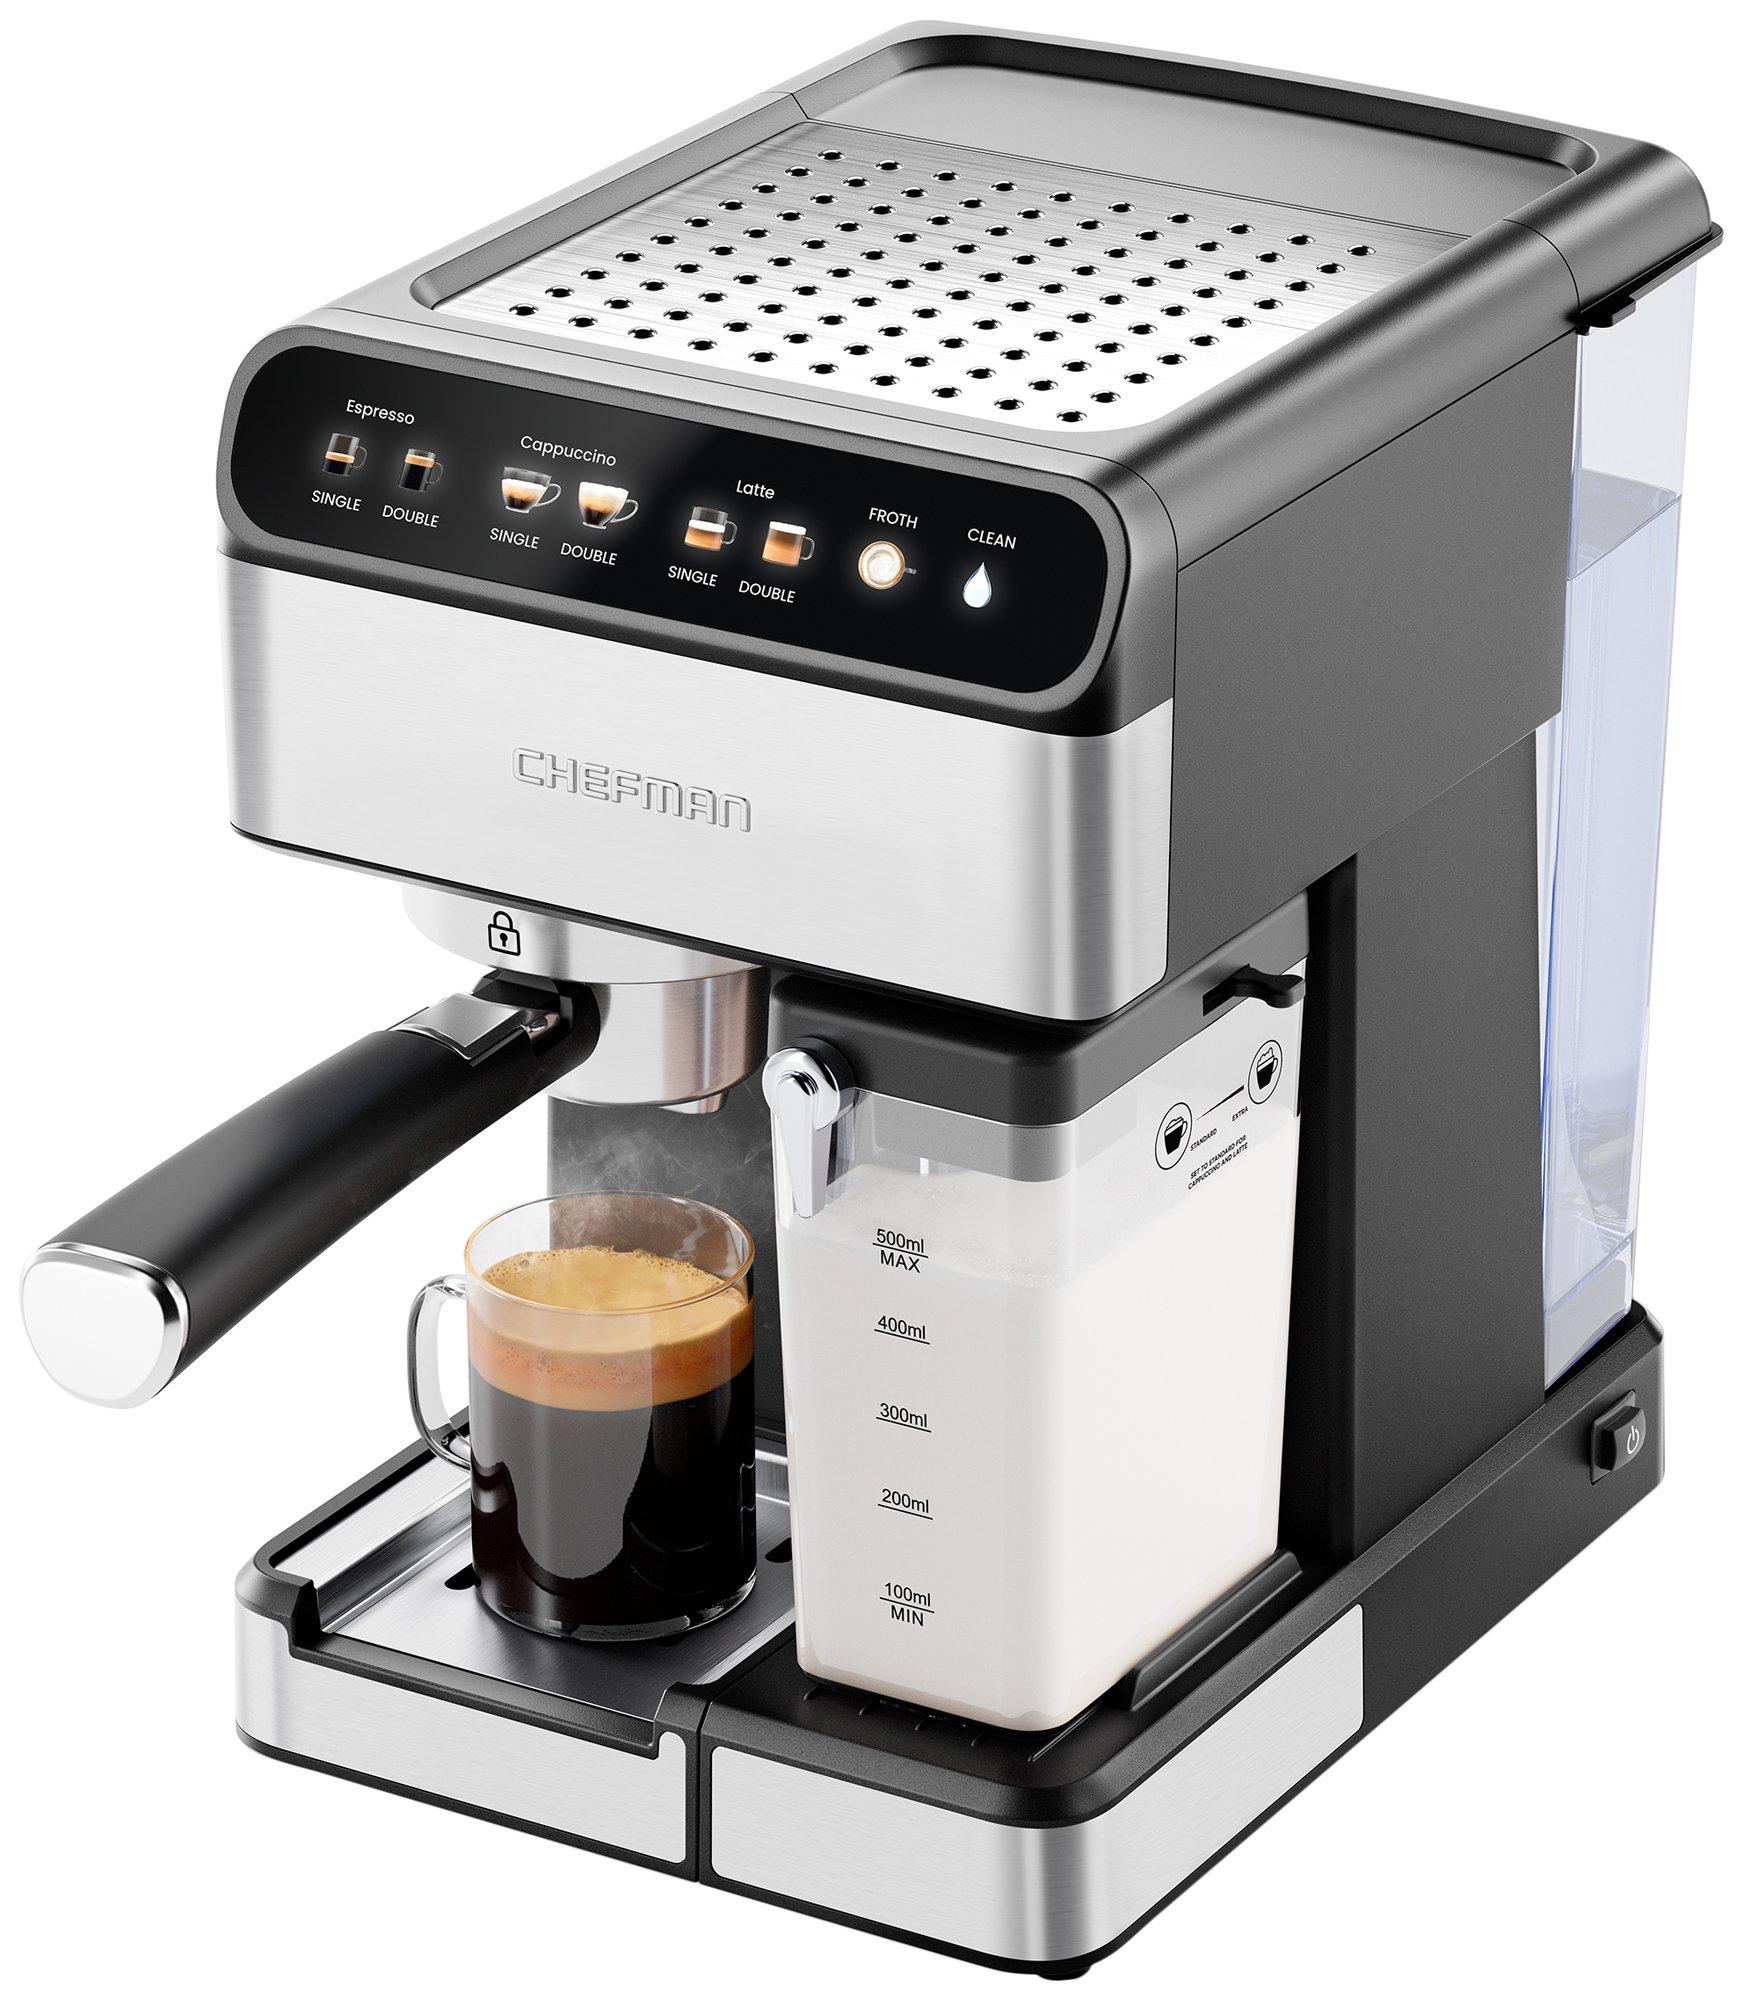 Digital Espresso Maker